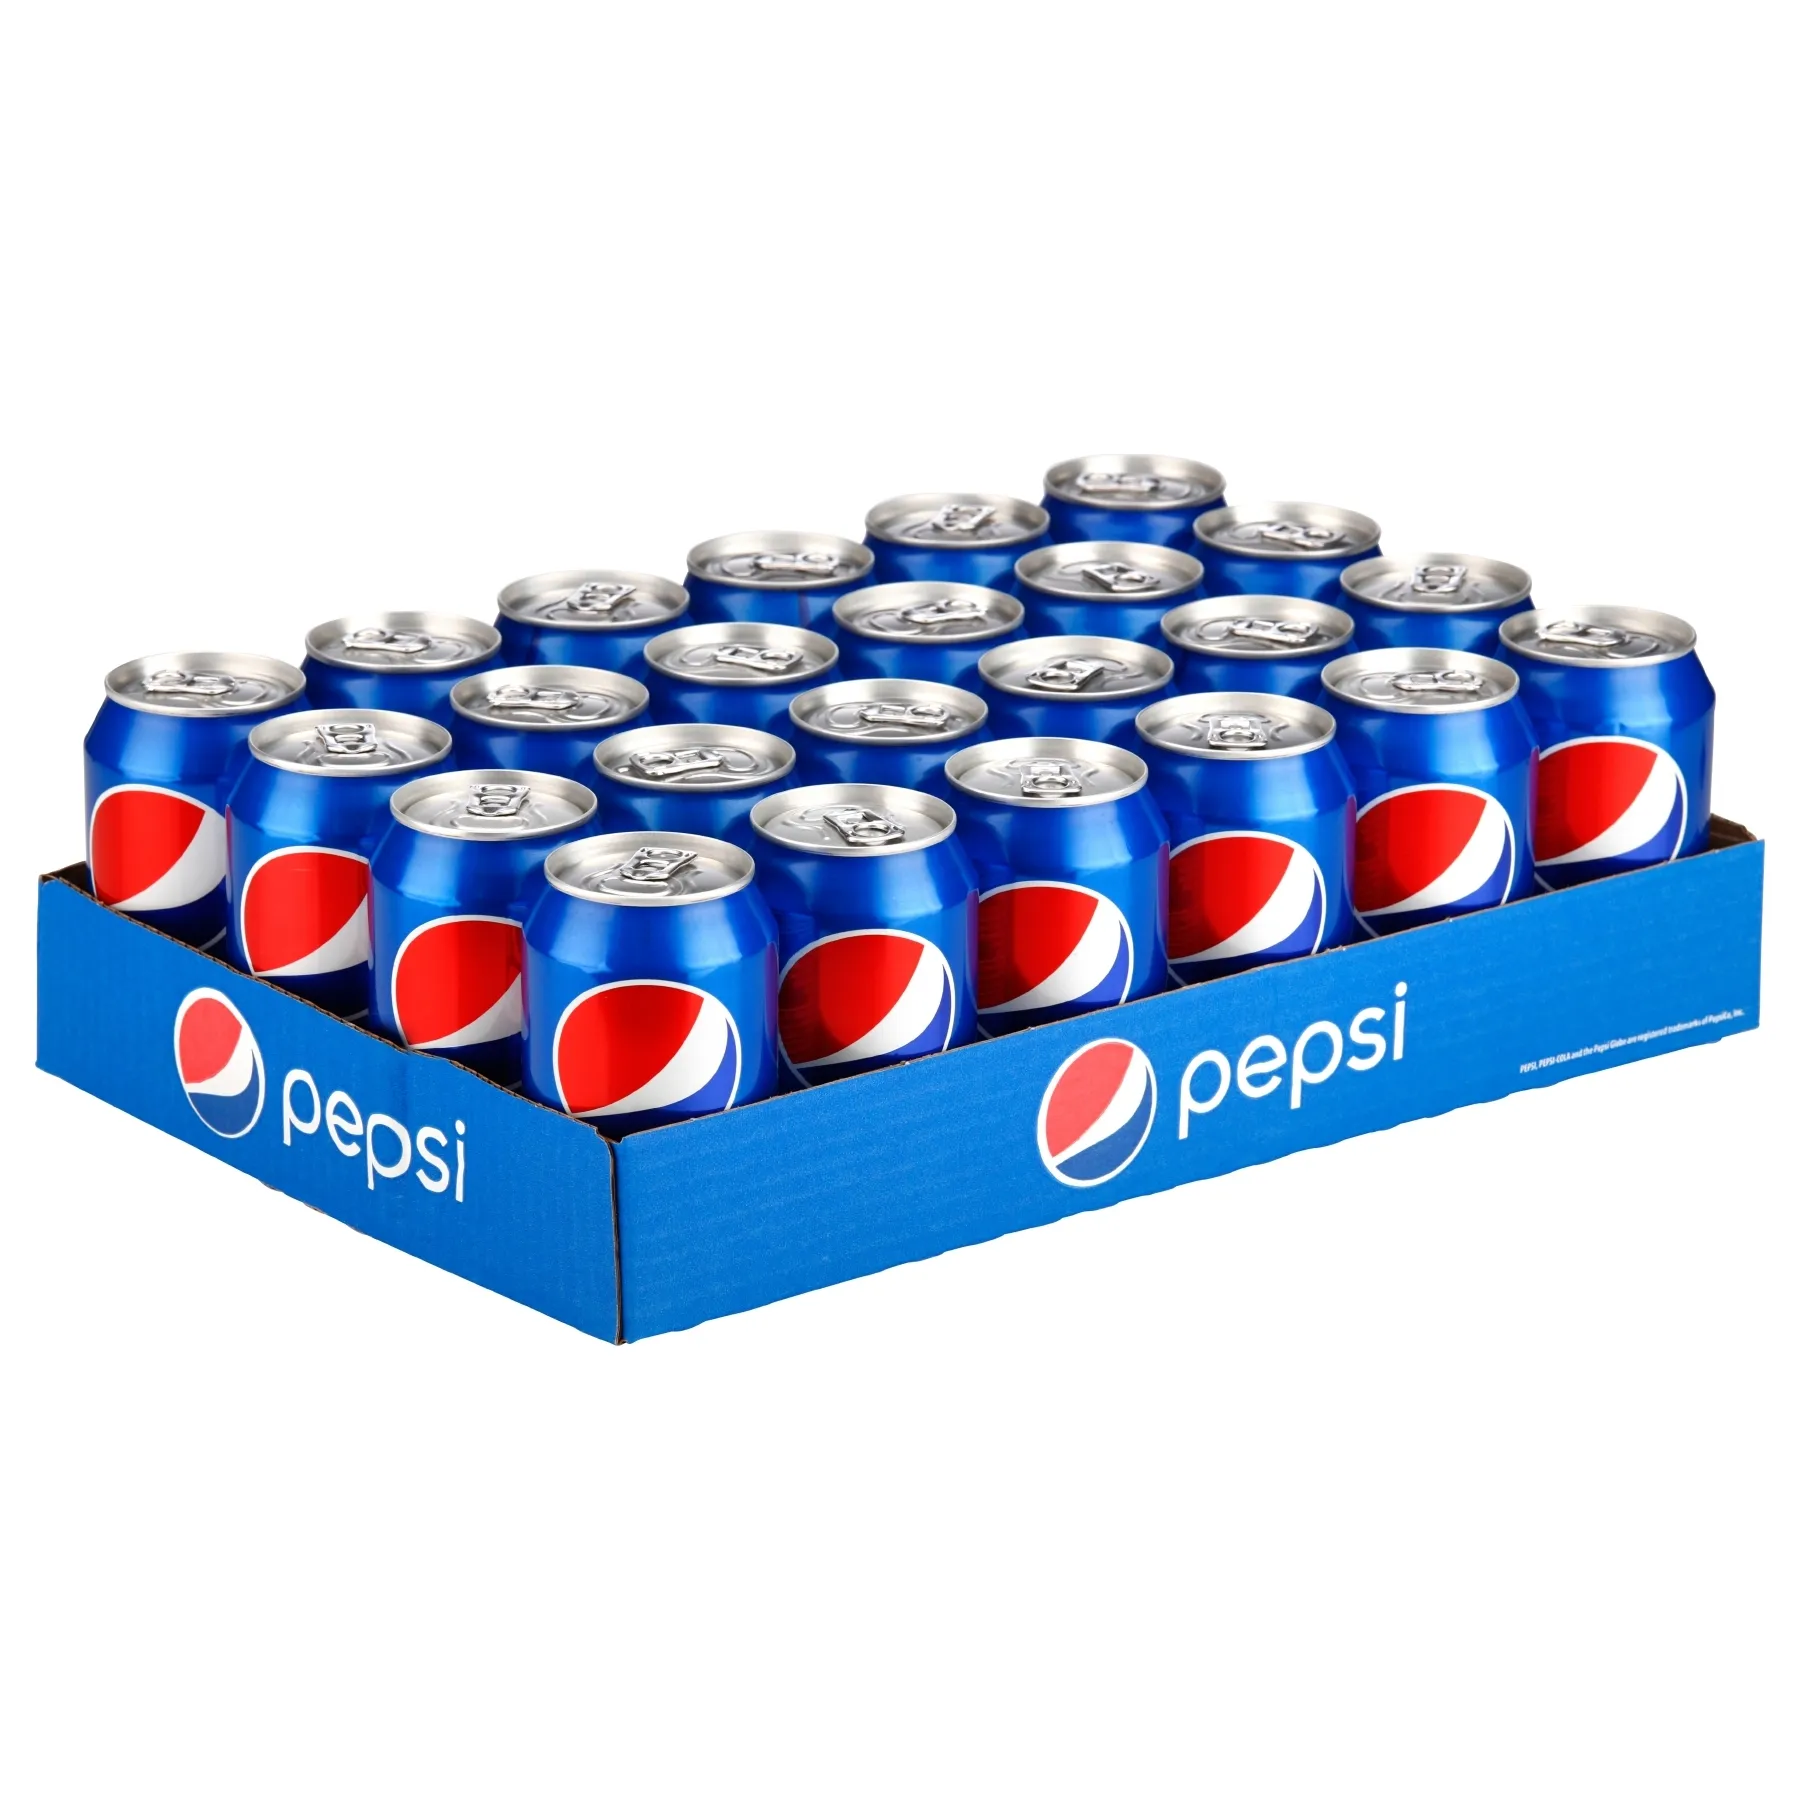 Пепси безалкогольных напитков Пепси 330ml * 24 банок/Pepsi Cola 0.33l может